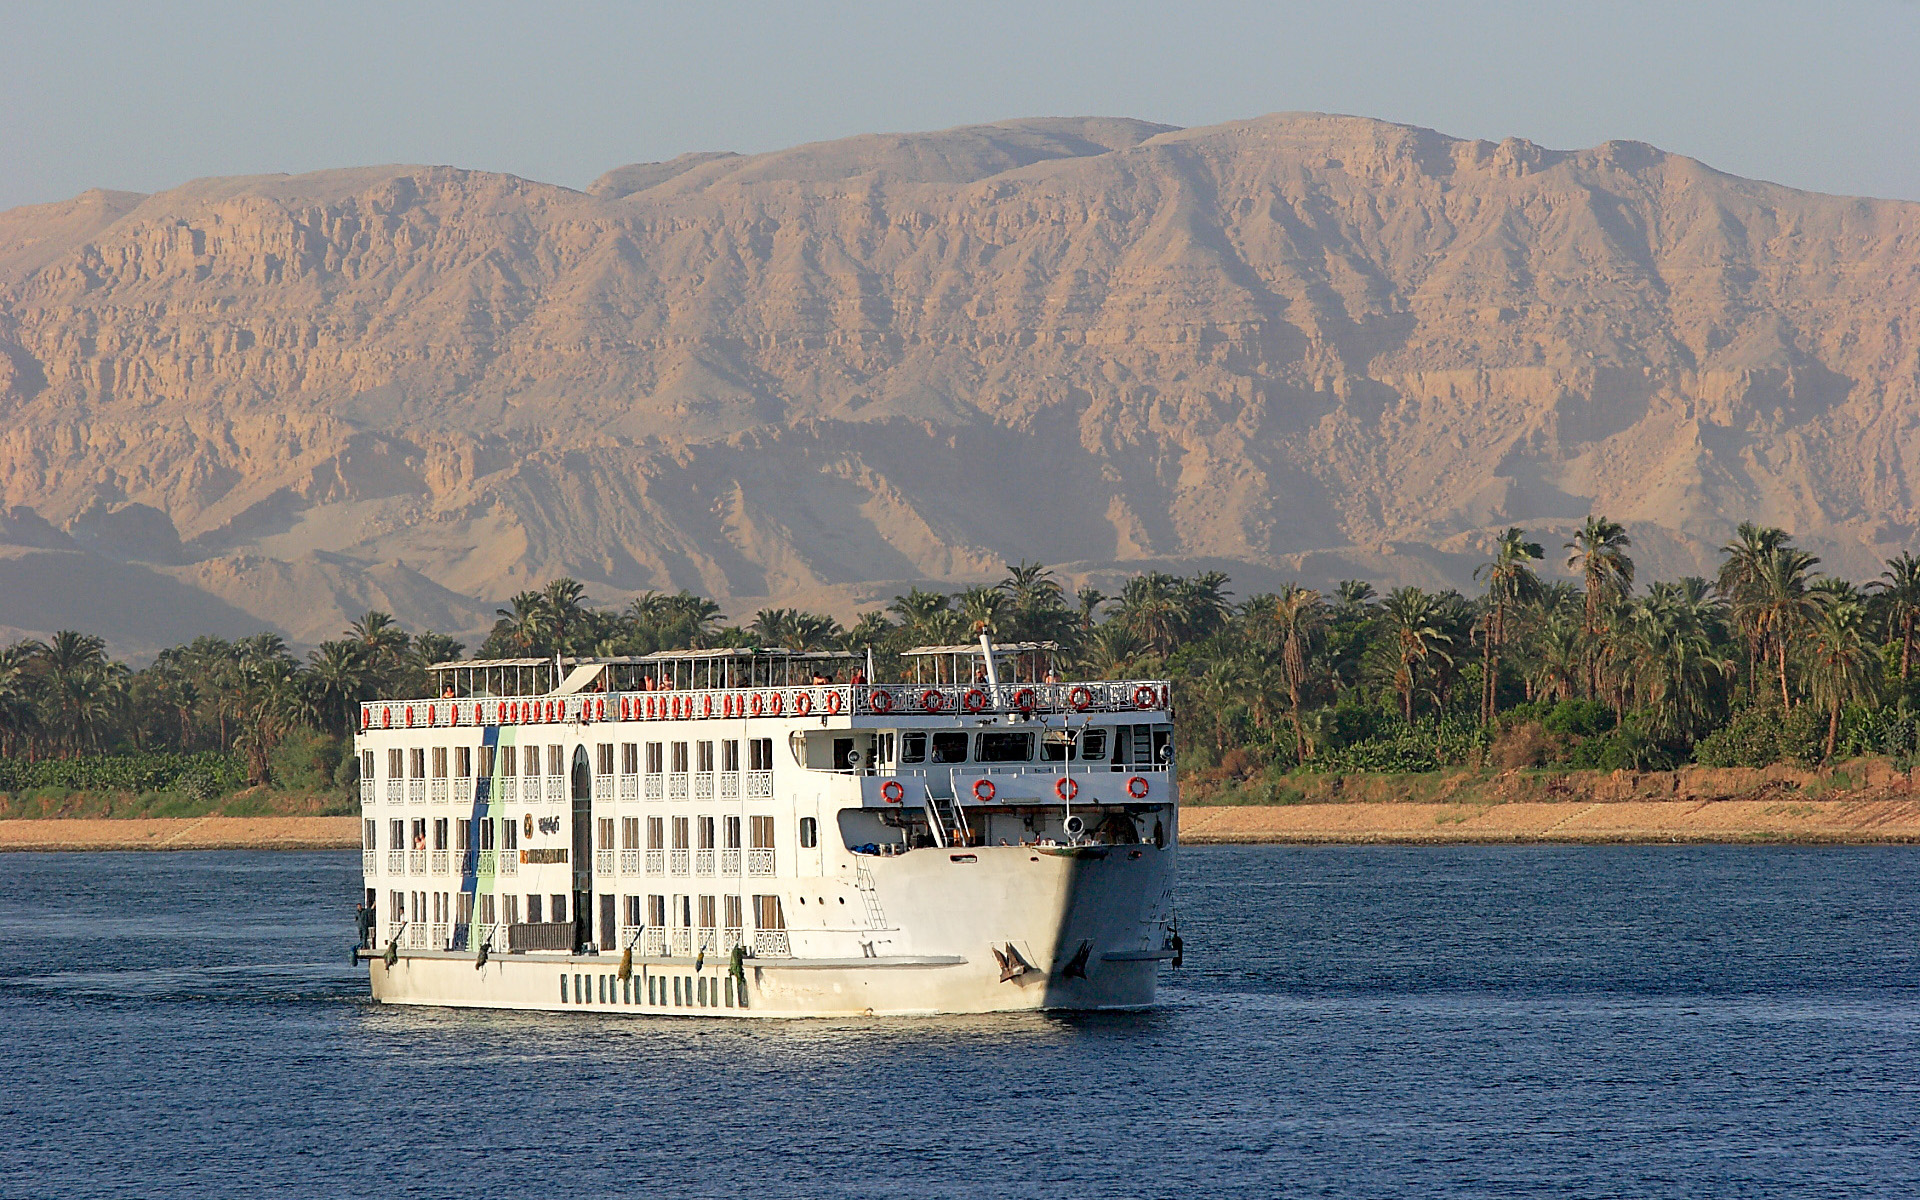 Egipt, Nil - pejzaż, fotografia podróżnicza